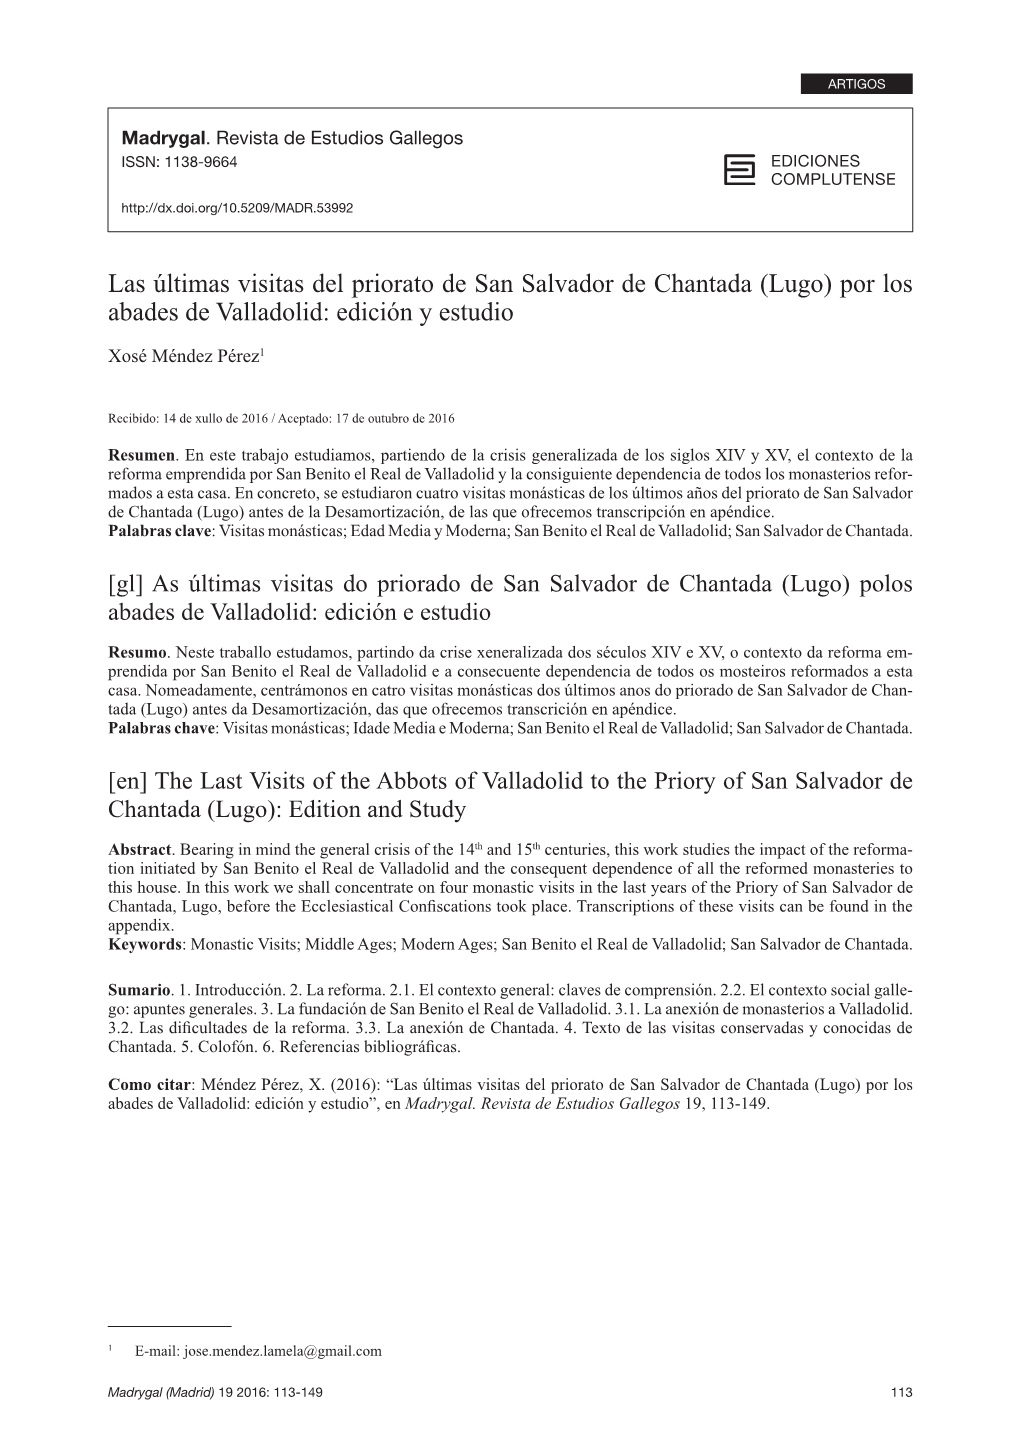 Las Últimas Visitas Del Priorato De San Salvador De Chantada (Lugo) Por Los Abades De Valladolid: Edición Y Estudio